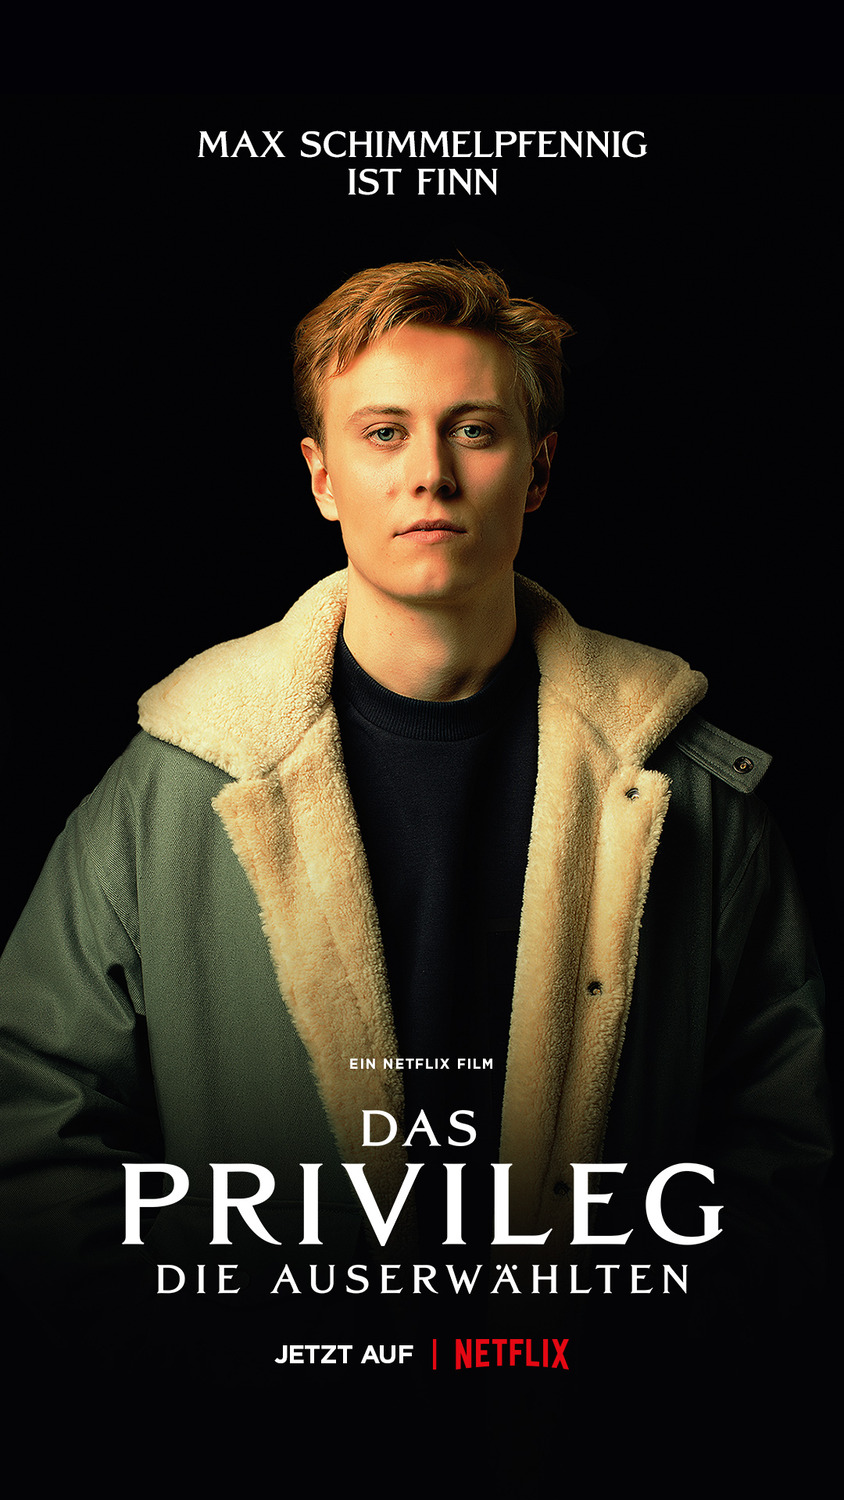 Das Privileg (#4 of 7): Extra Large Movie Poster Image - IMP Awards